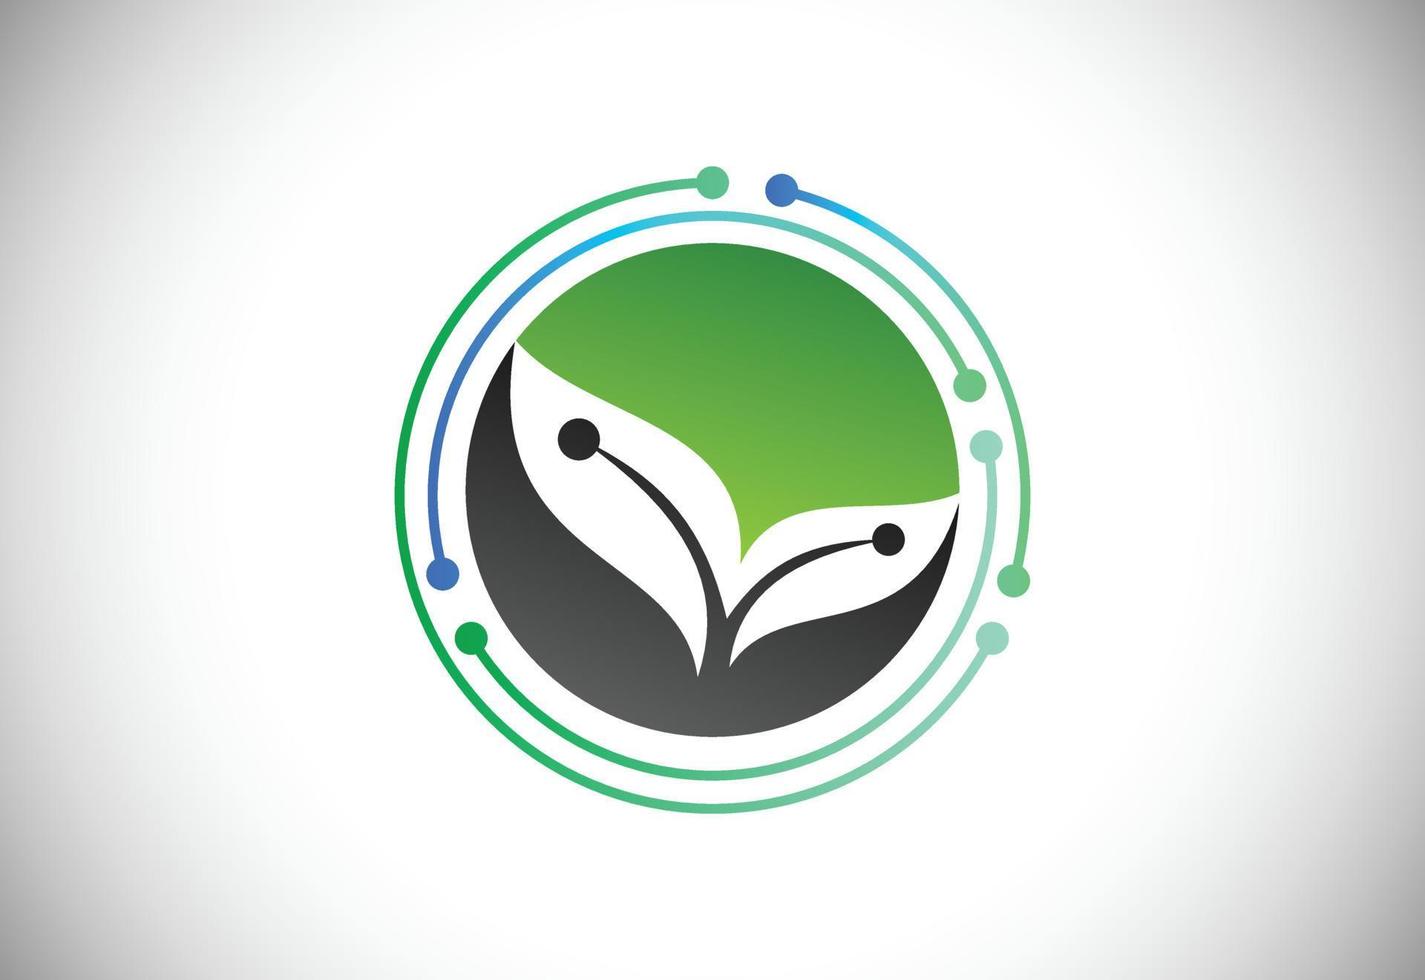 creatieve bladtechnologie logo ontwerpsjabloon, groene technologie logo ontwerpen concept vector